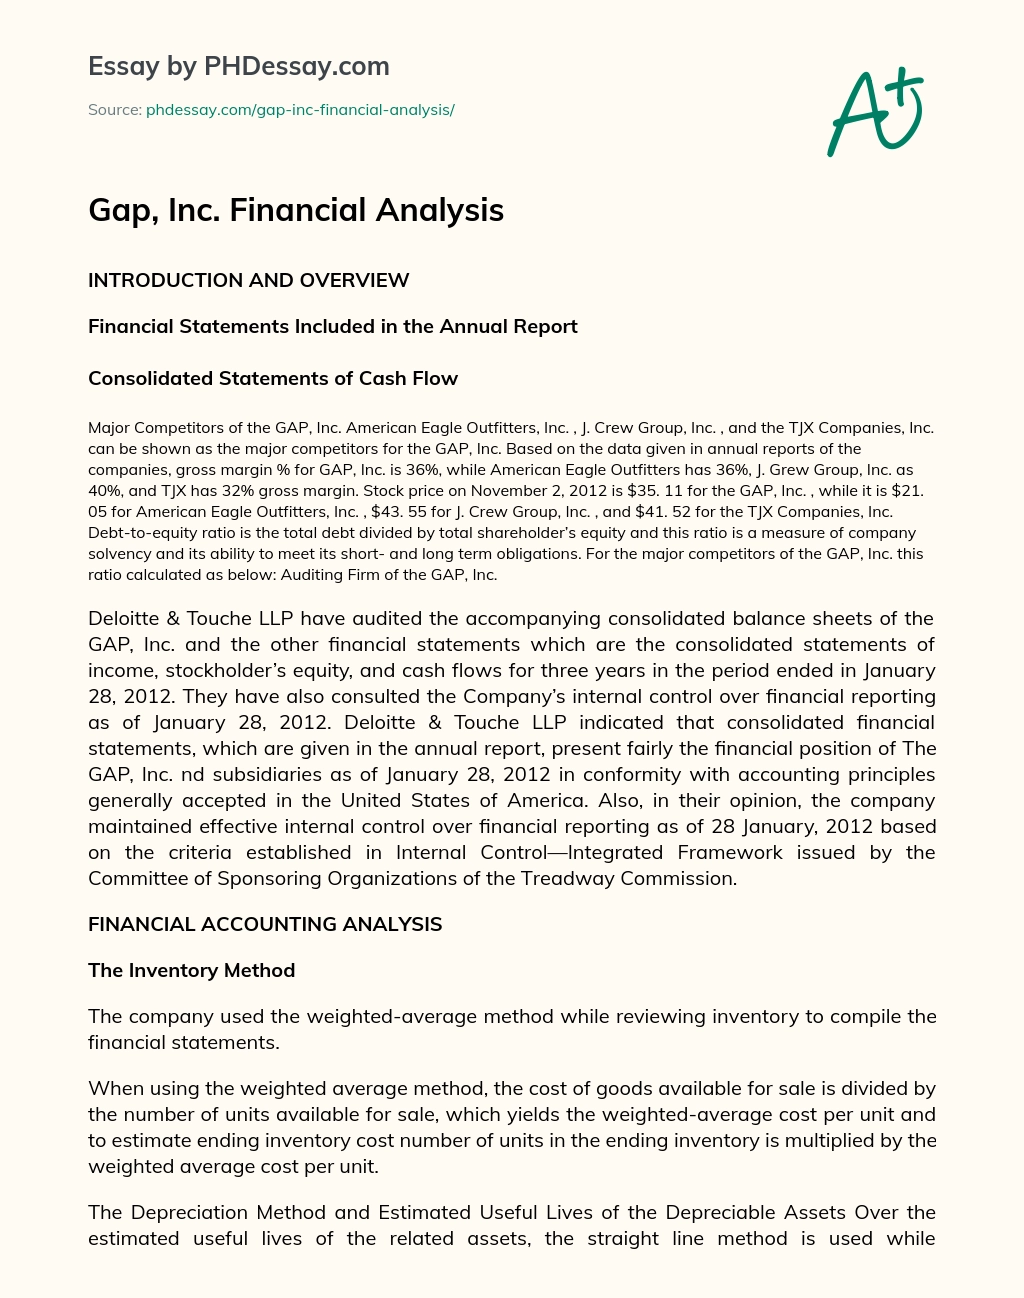 Gap, Inc. Financial Analysis essay